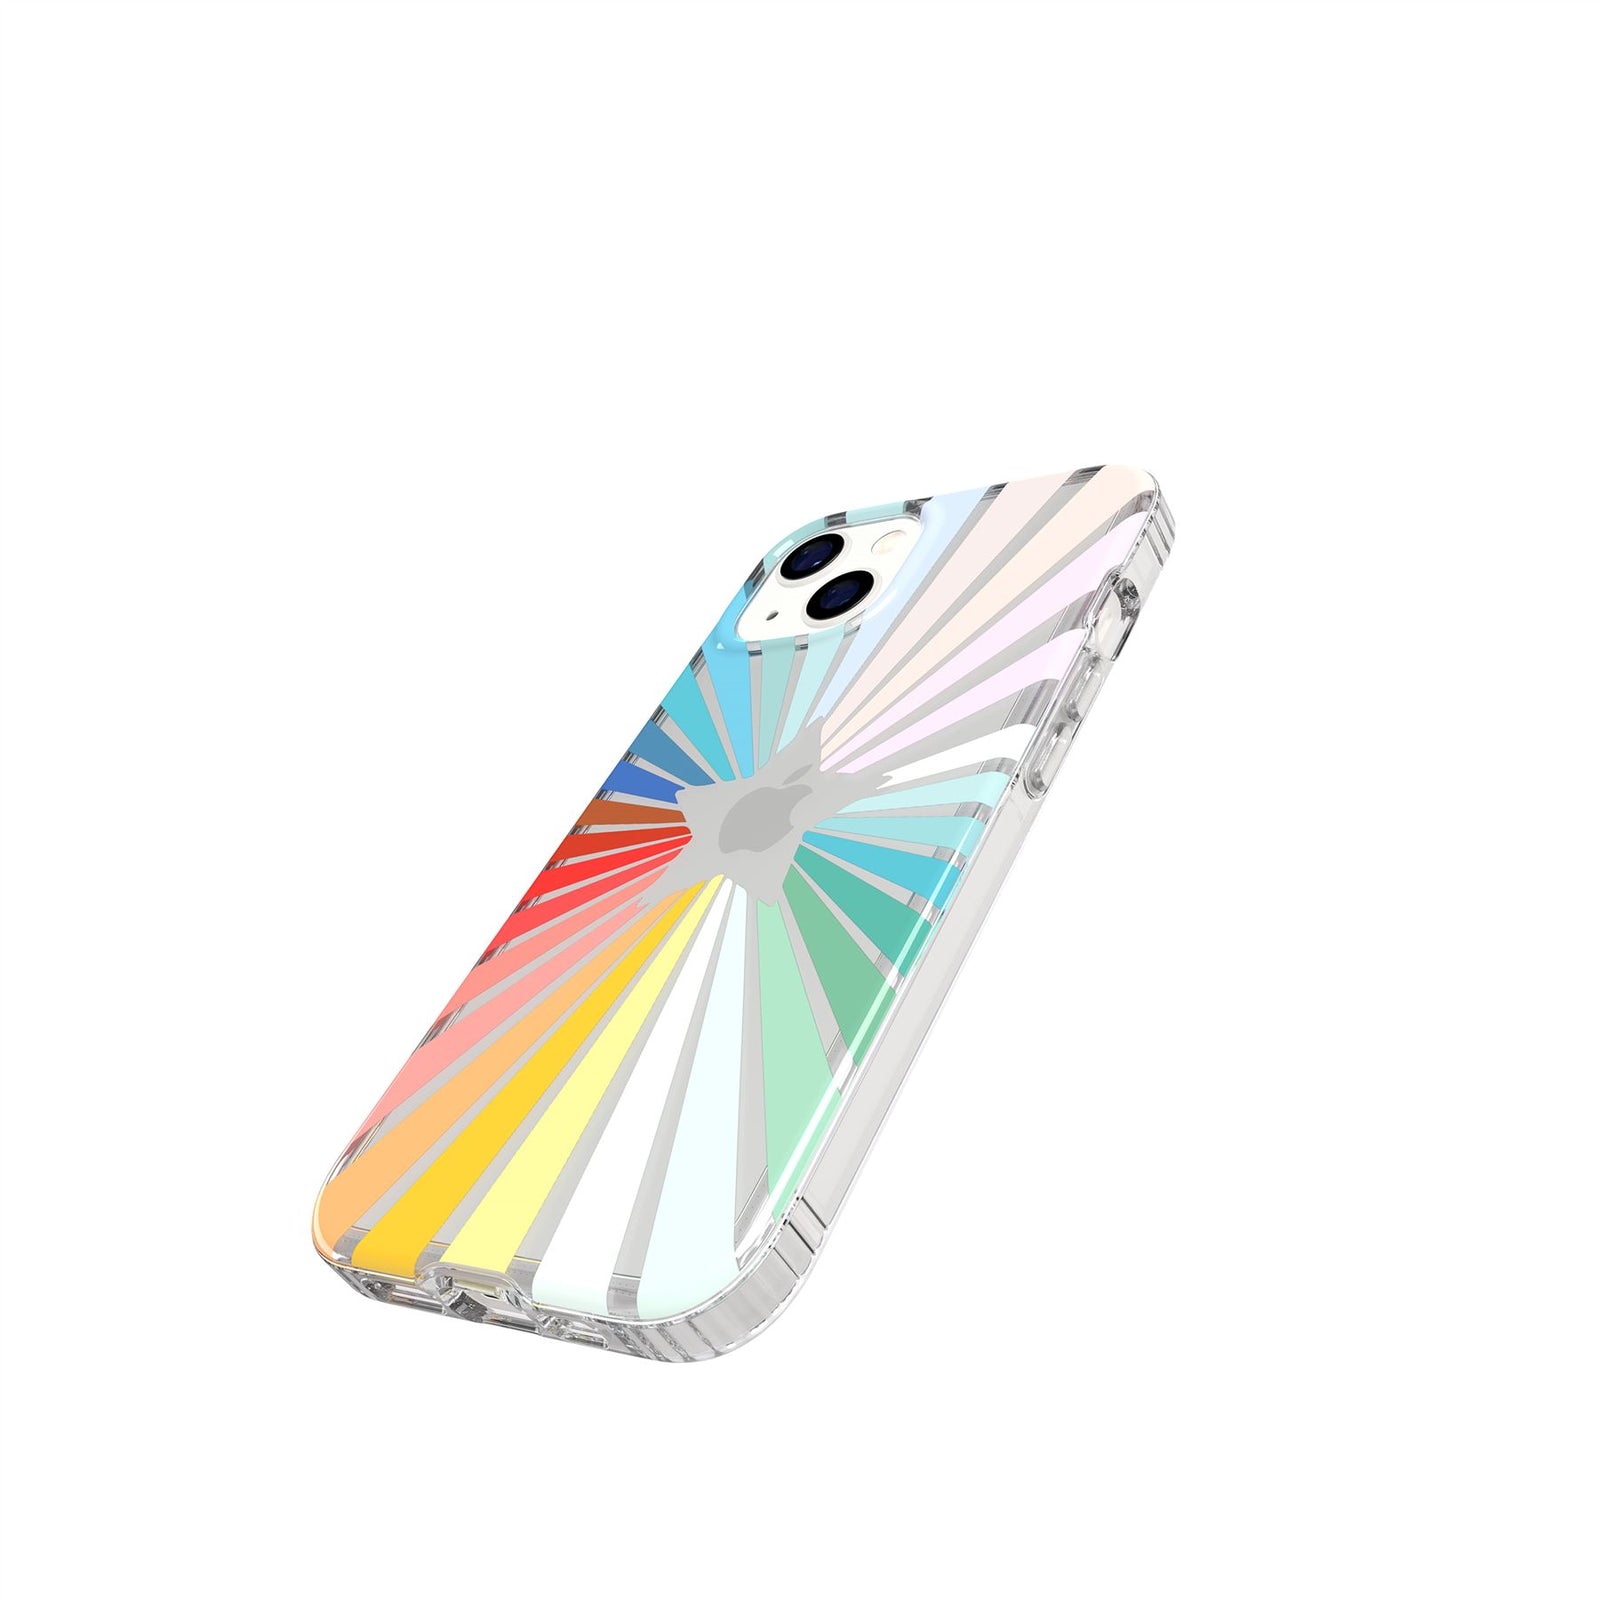 Evo Art - Apple iPhone 13 Case - Rainbow Sunburst